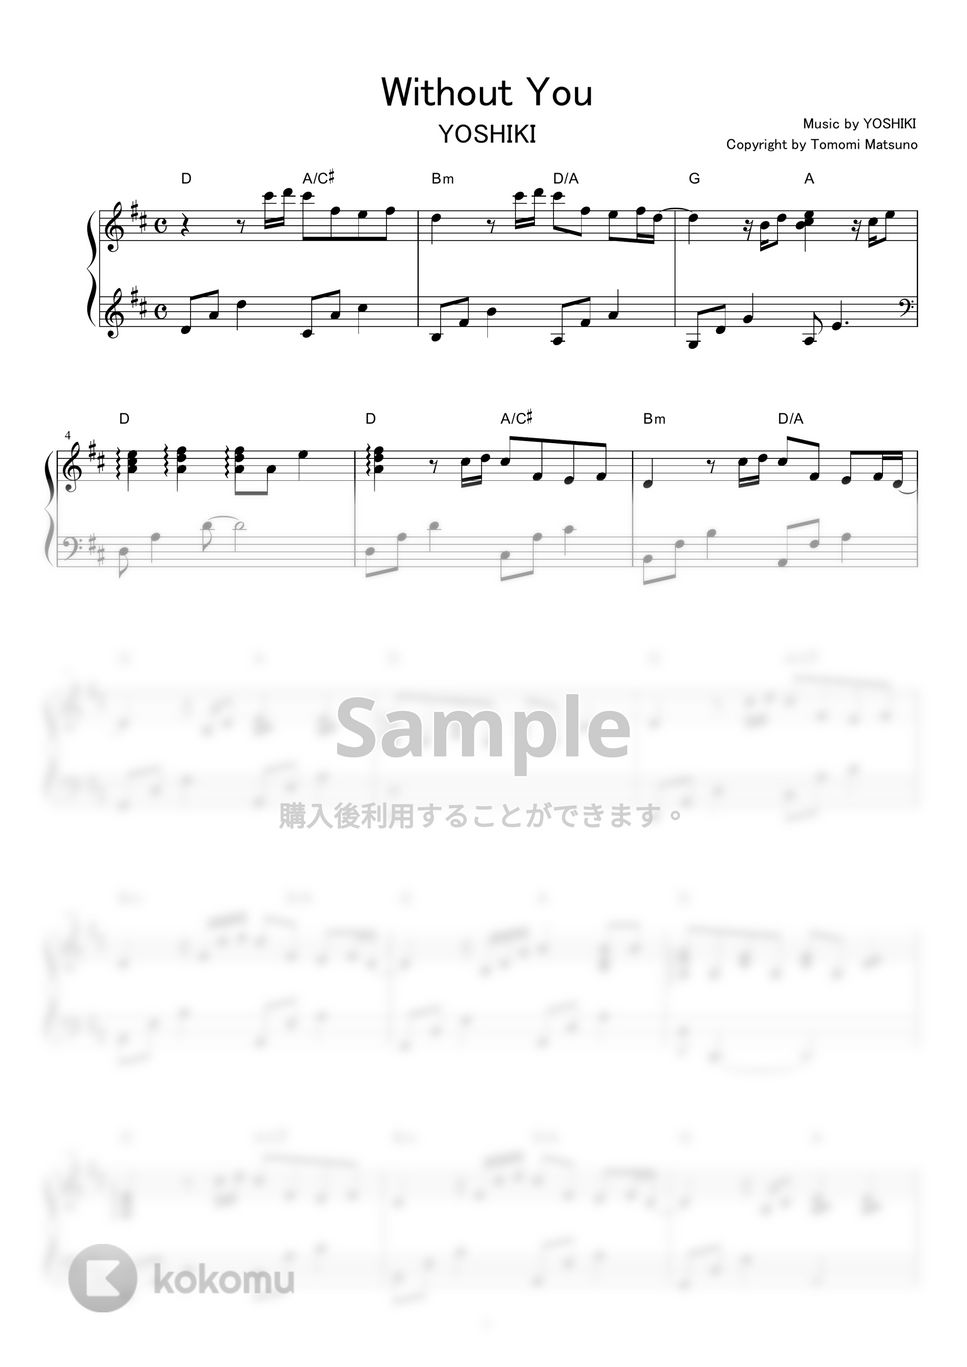 YOSHIKI - Without You by piano*score